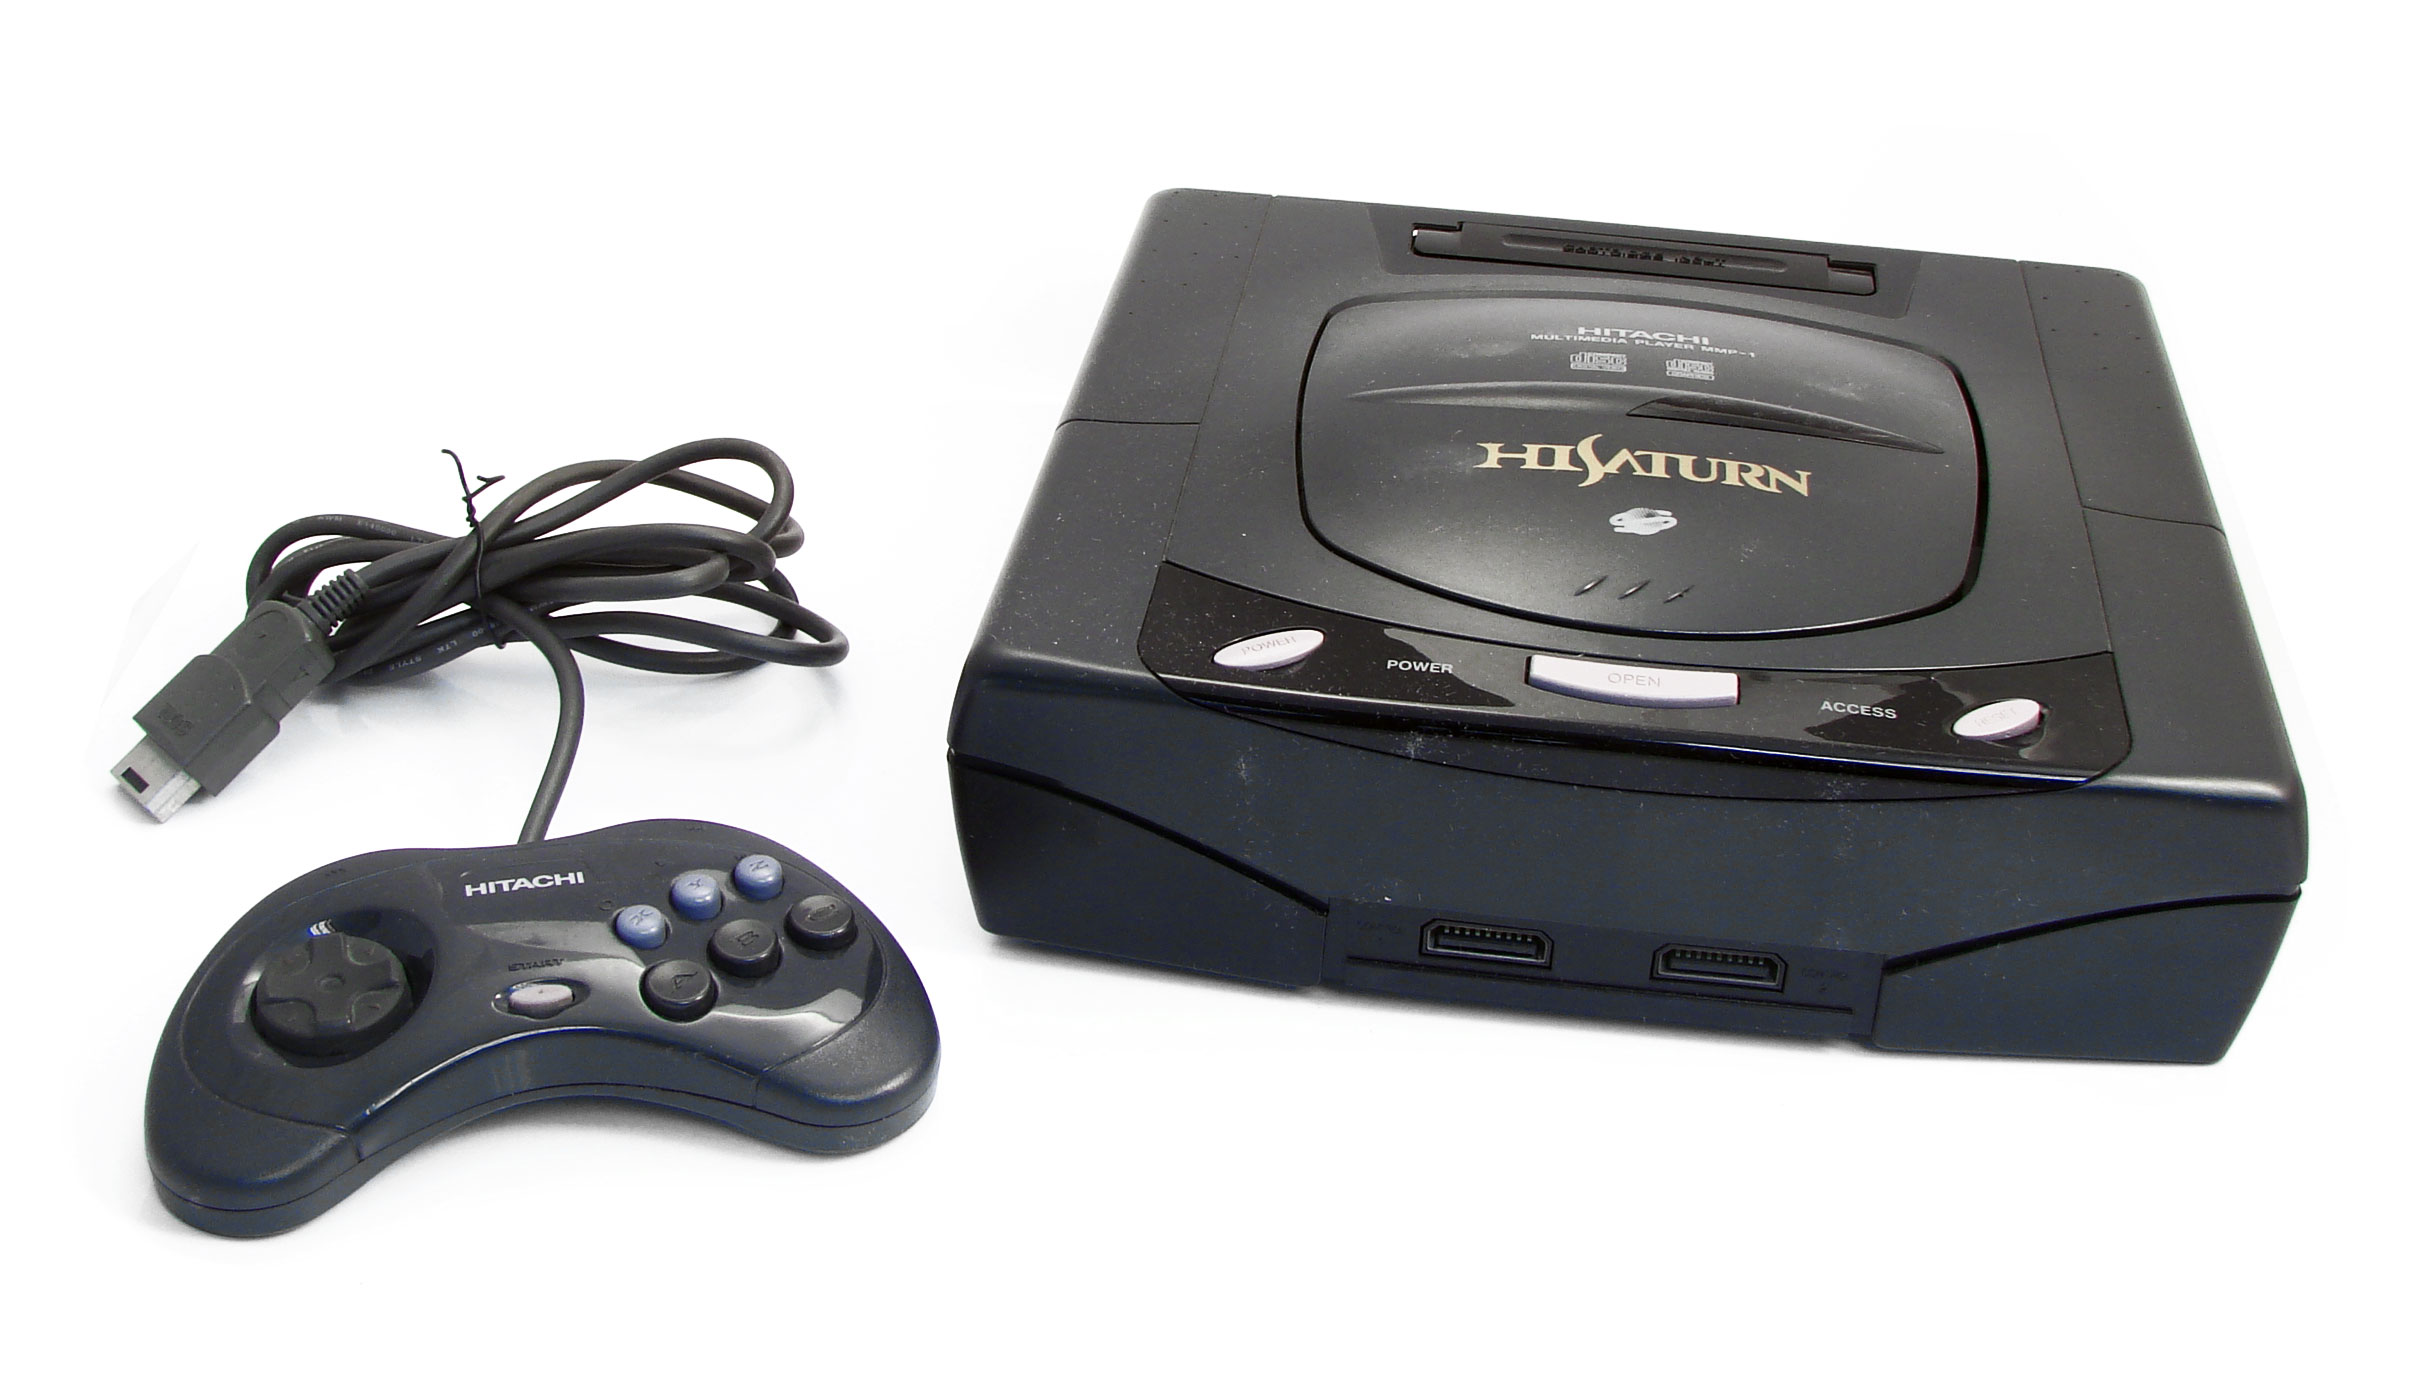 Sega Saturn System - Video Game Console